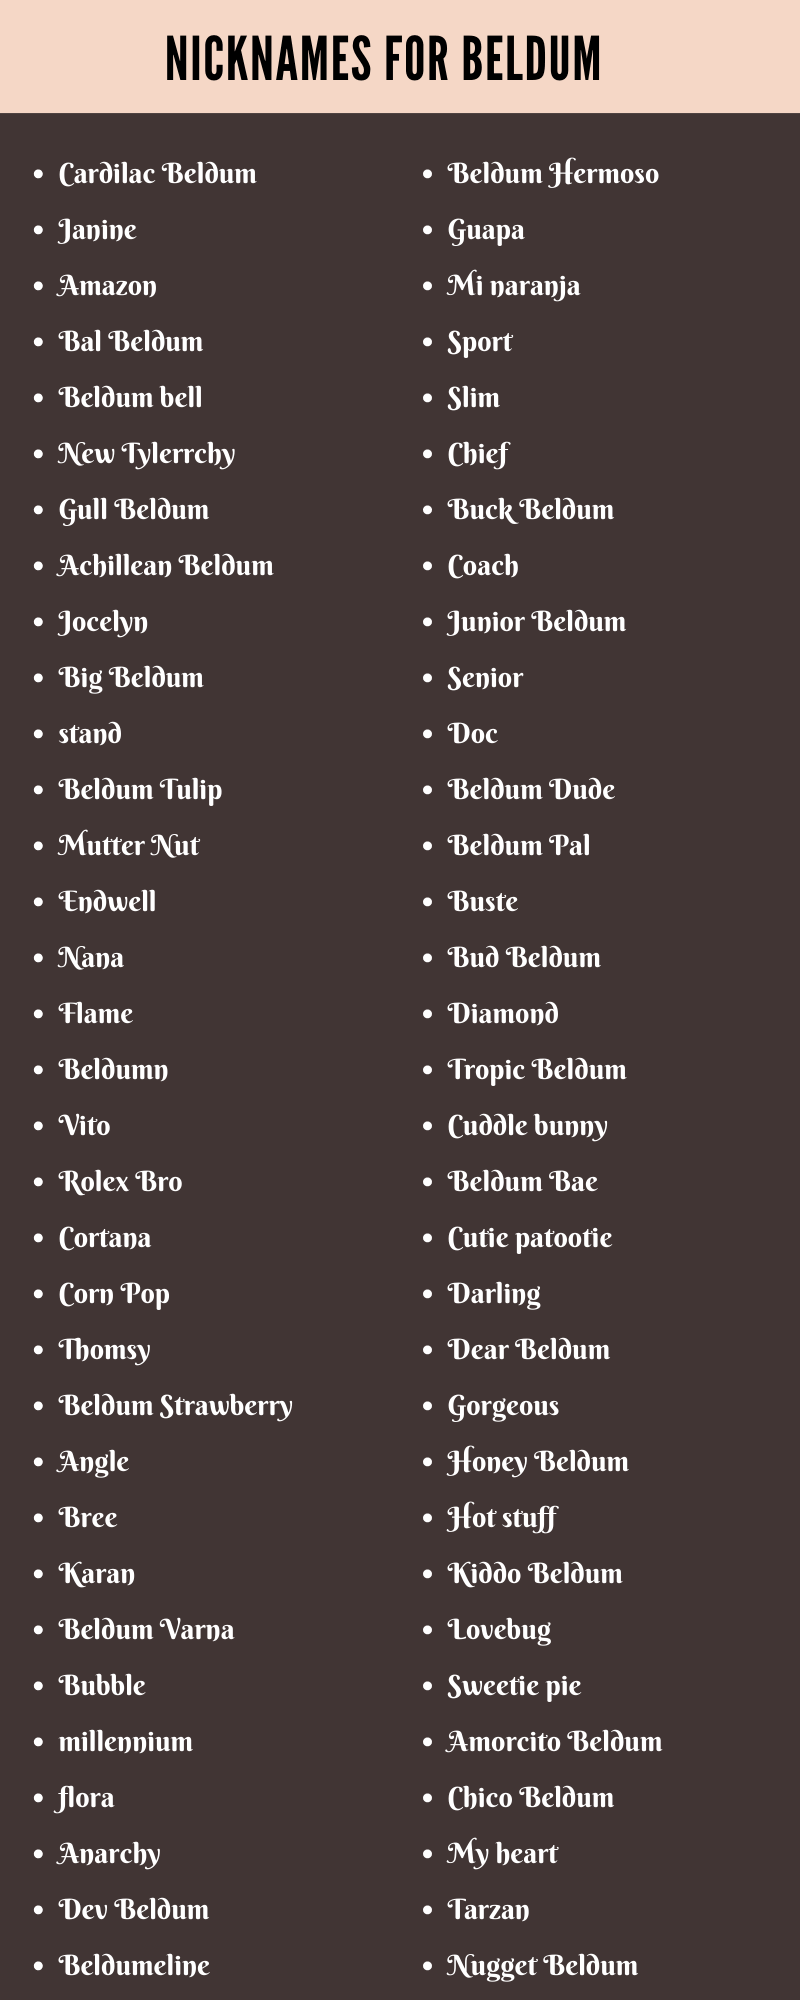 Nicknames For Beldum